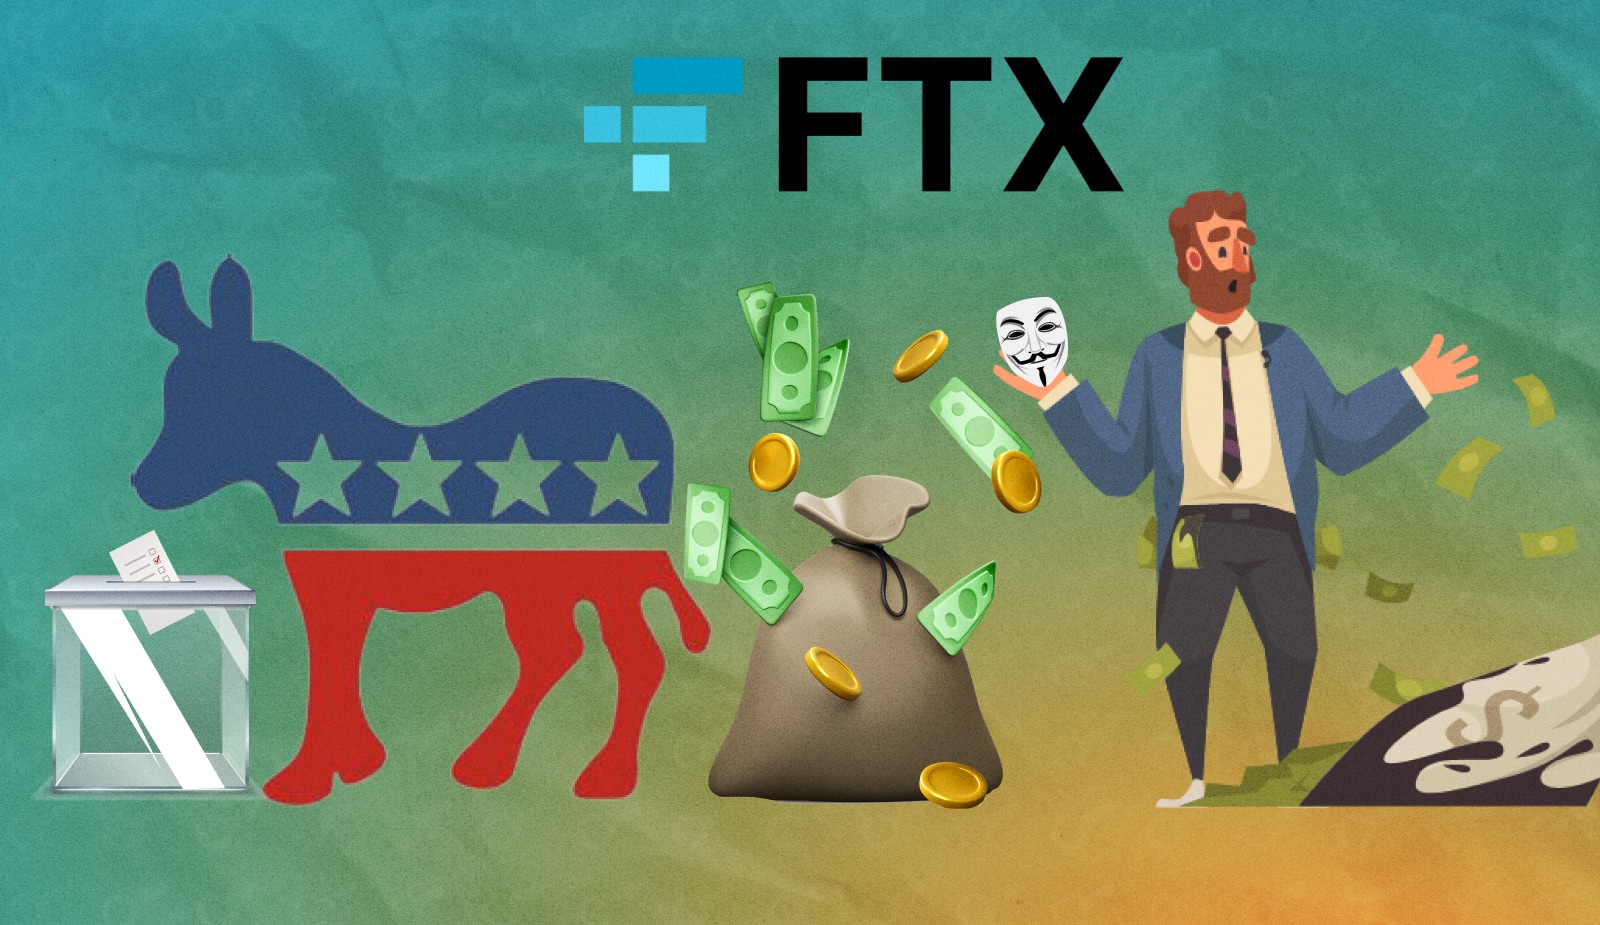 Исполнительный директор FTX тайно перевел демократам полмиллиона долларов. Заглавный коллаж новости.